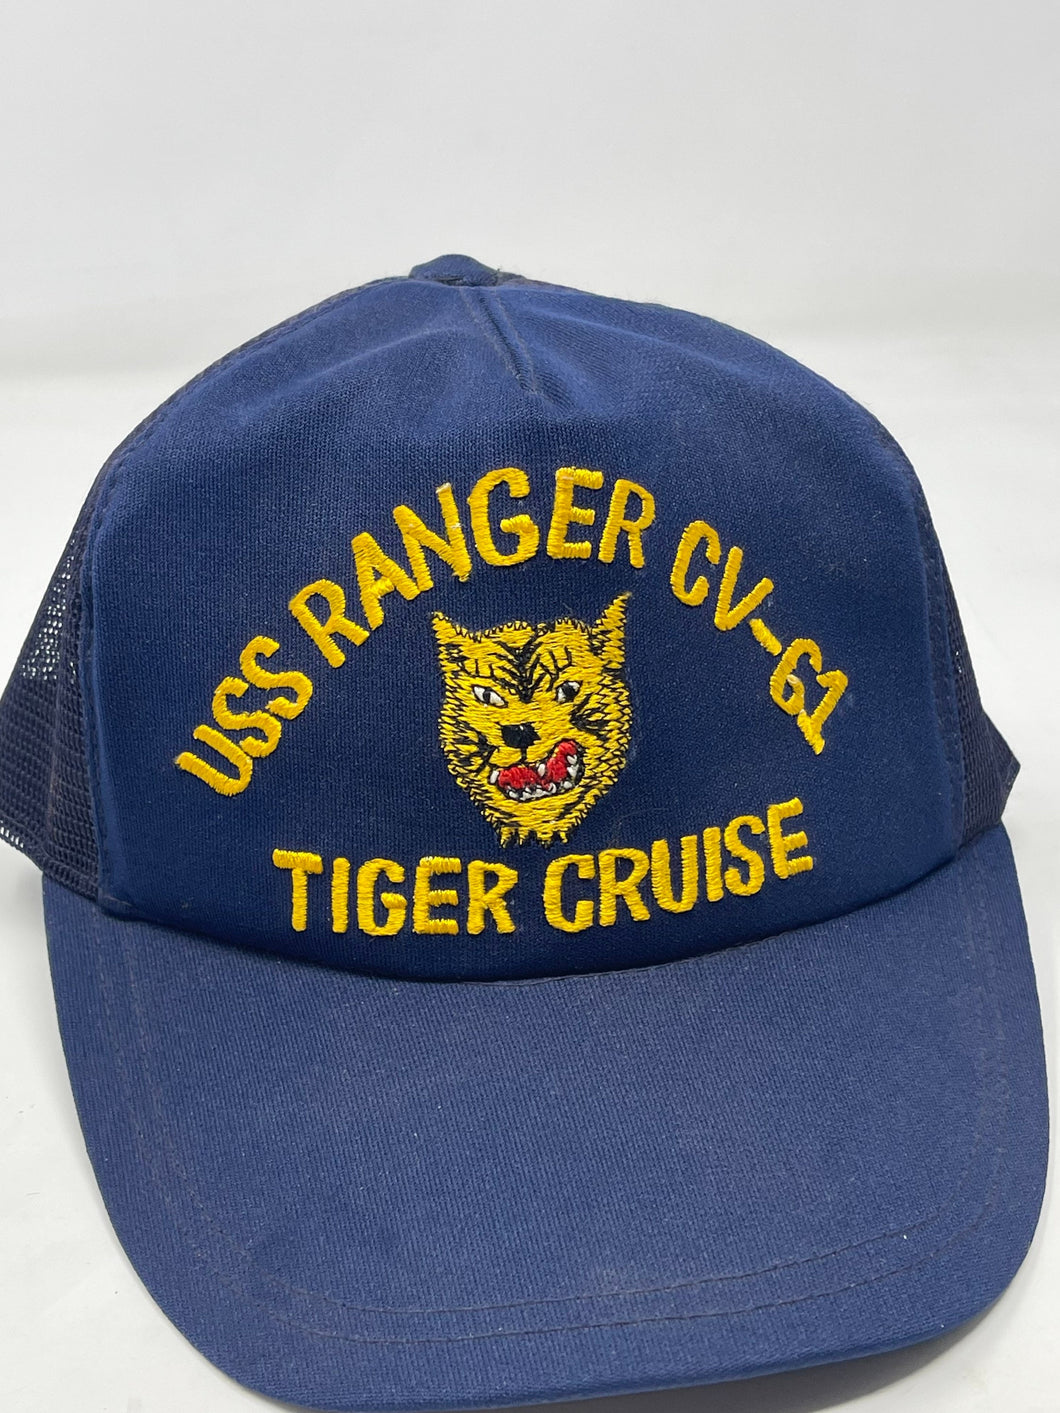 Vintage U.S. Navy USS Ranger CV-61 Tiger Cruise NAVY cap, B51